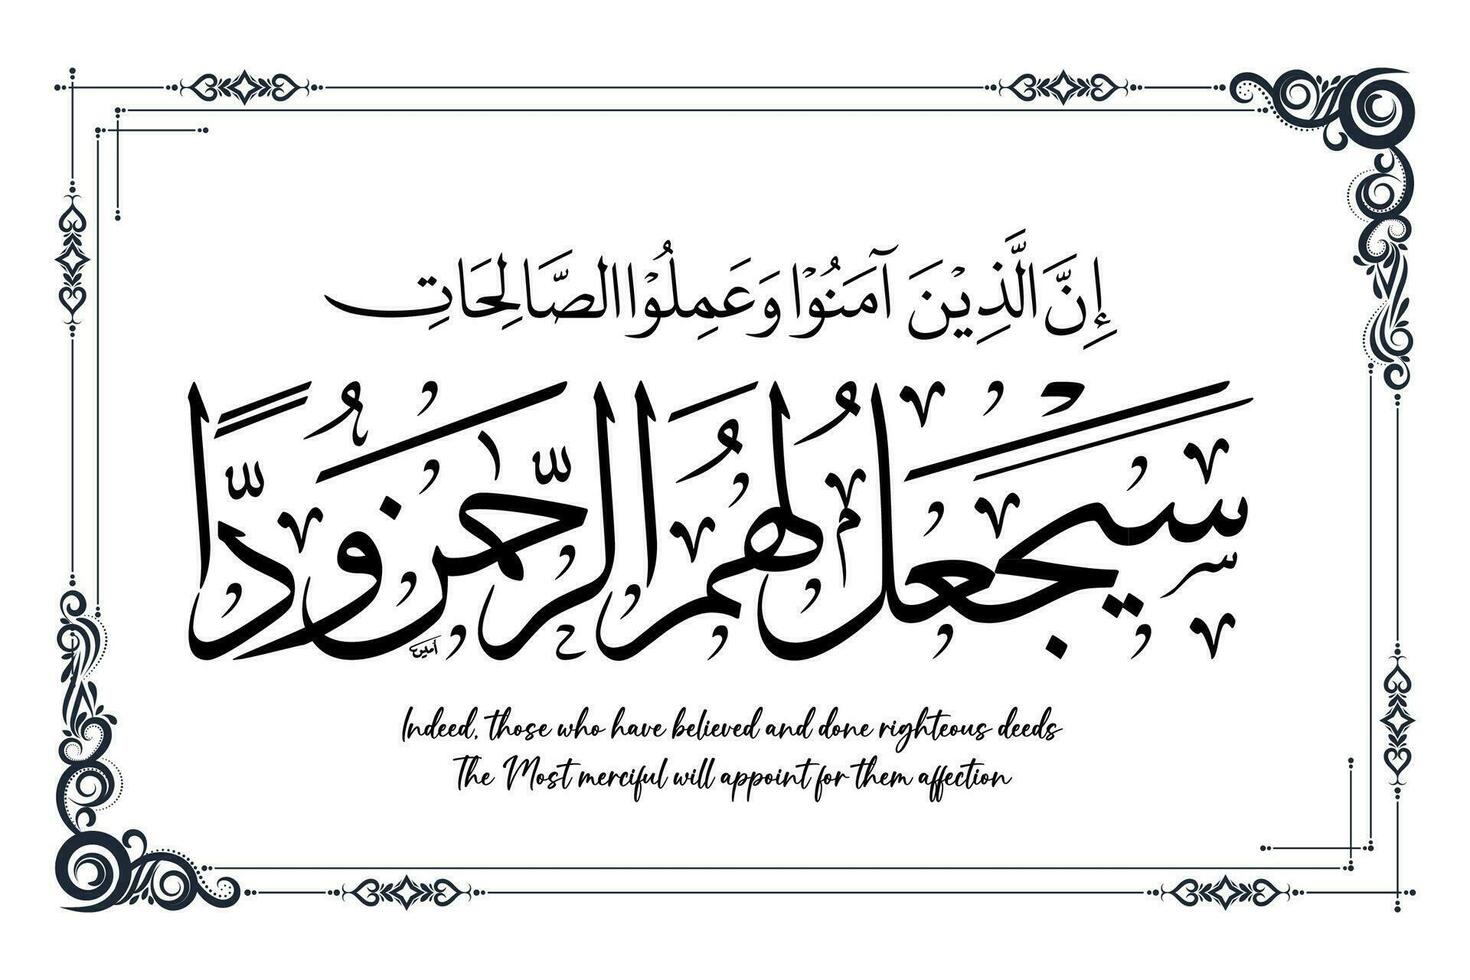 islamique calligraphie lequel moyens, en effet, ceux qui avoir a cru et terminé vertueux actes le plus miséricordieux volonté nommer pour leur affection vecteur